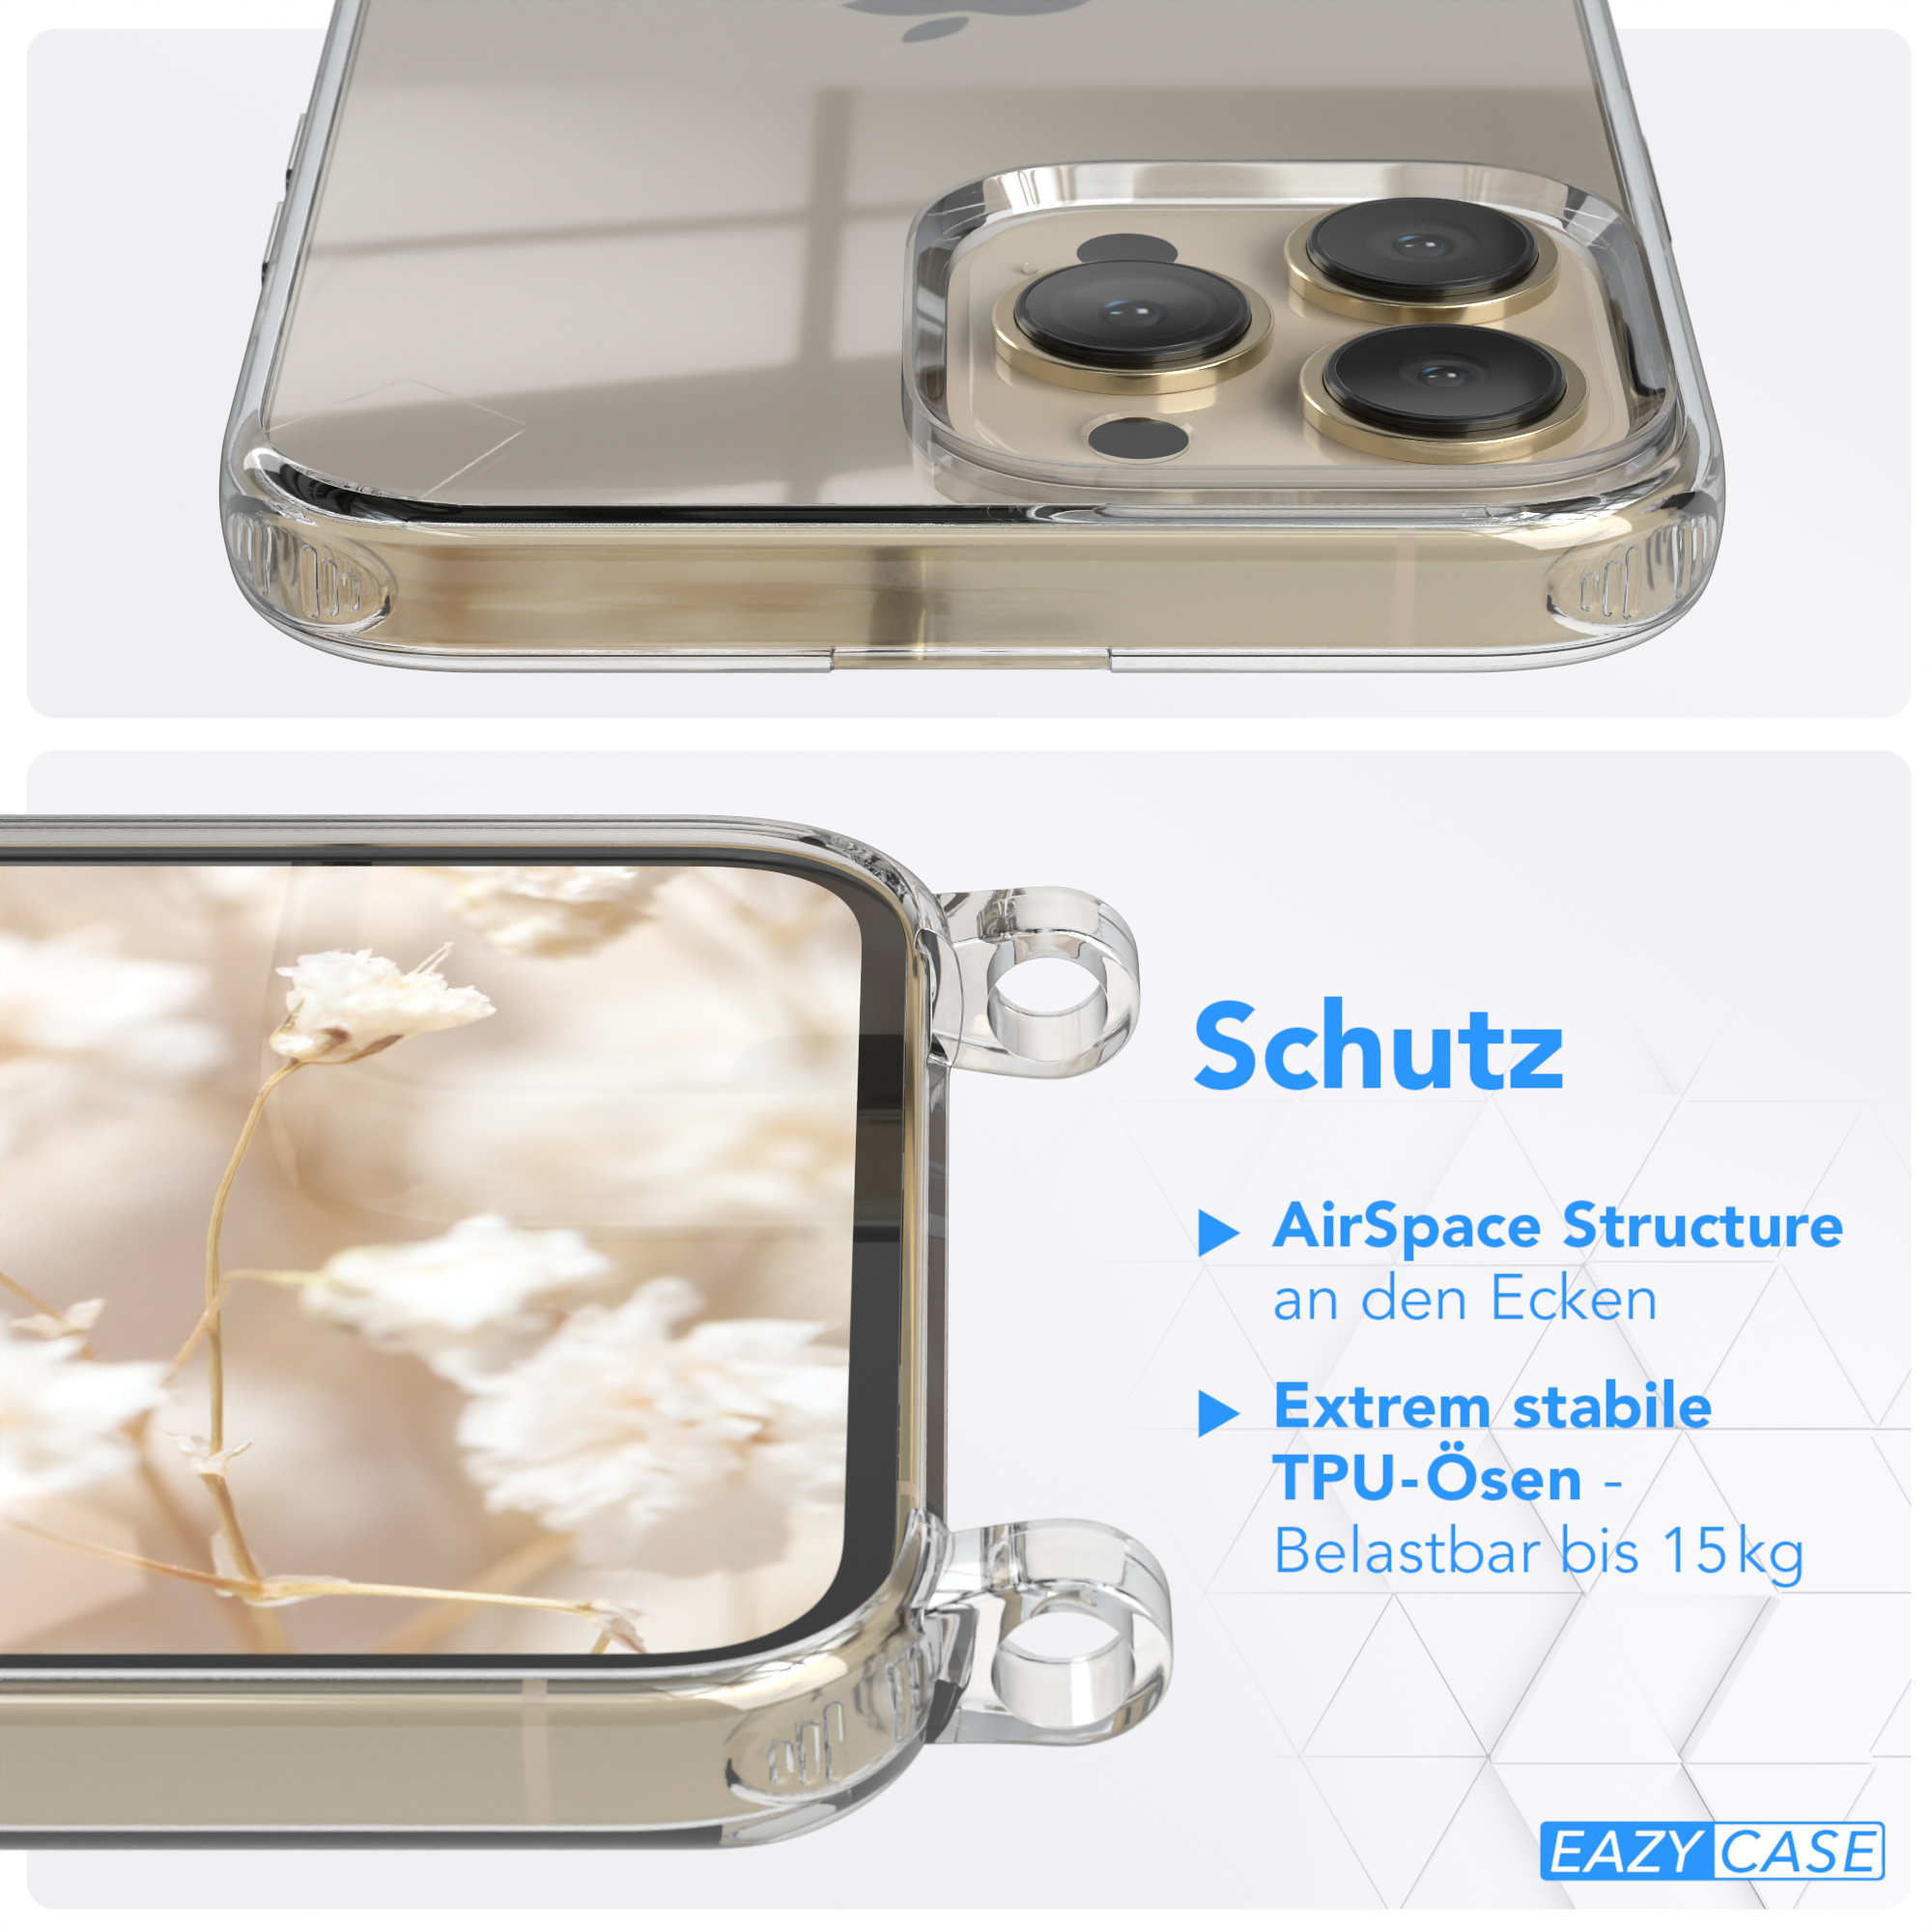 EAZY Pro Kordel Apple, iPhone Handyhülle CASE Transparente Boho 13 Style, mit Umhängetasche, / Max, Weiß Blau